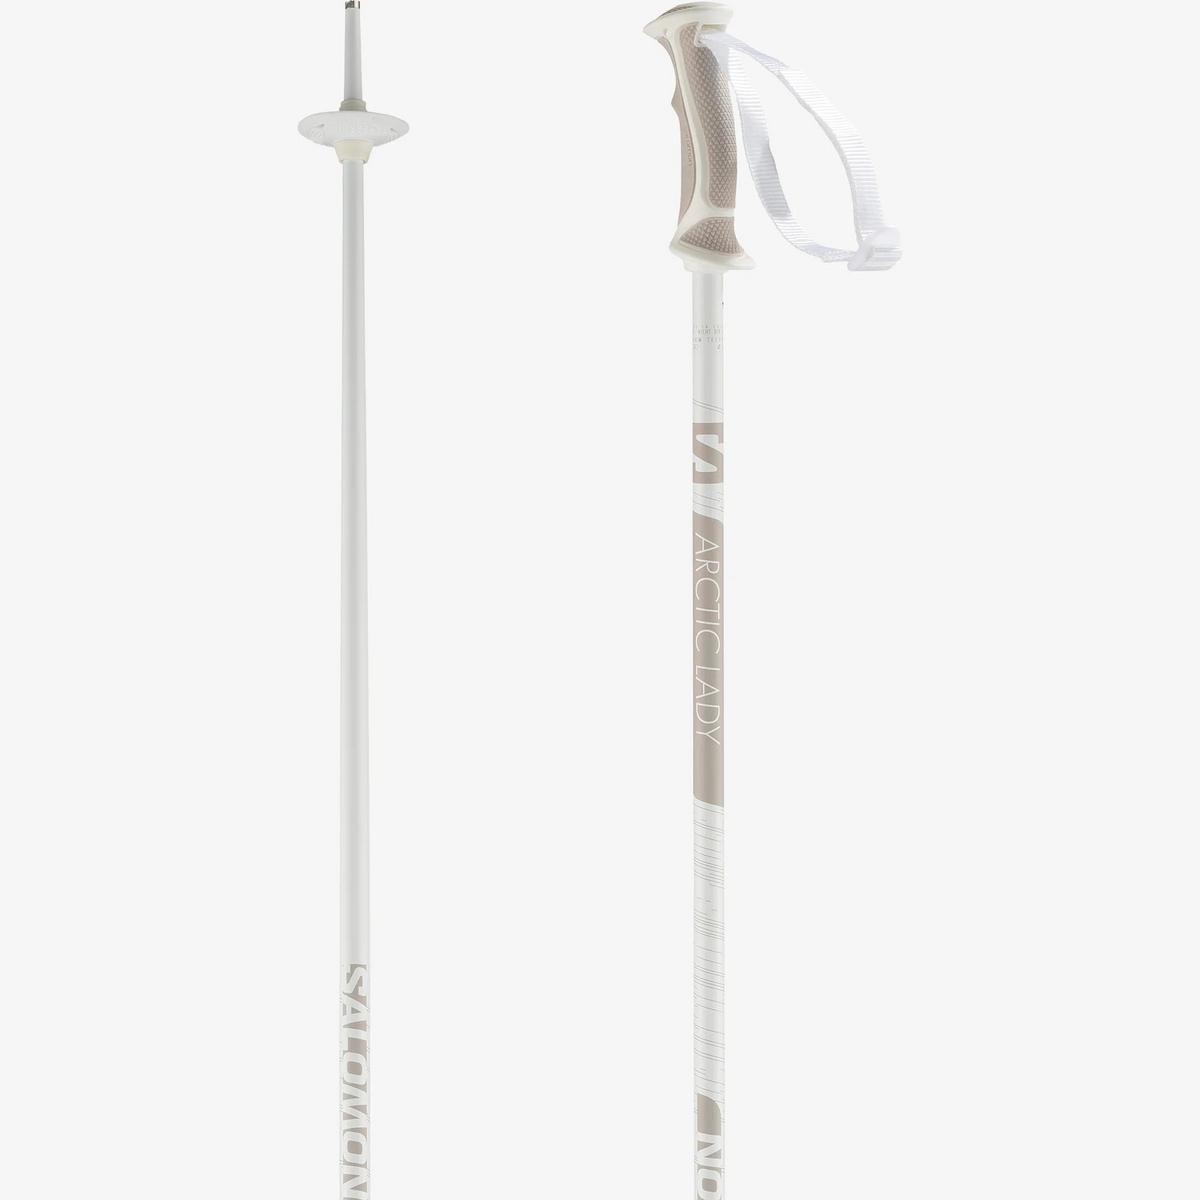 Salomon Women's Arctic Lady Ski Poles - White/Gray